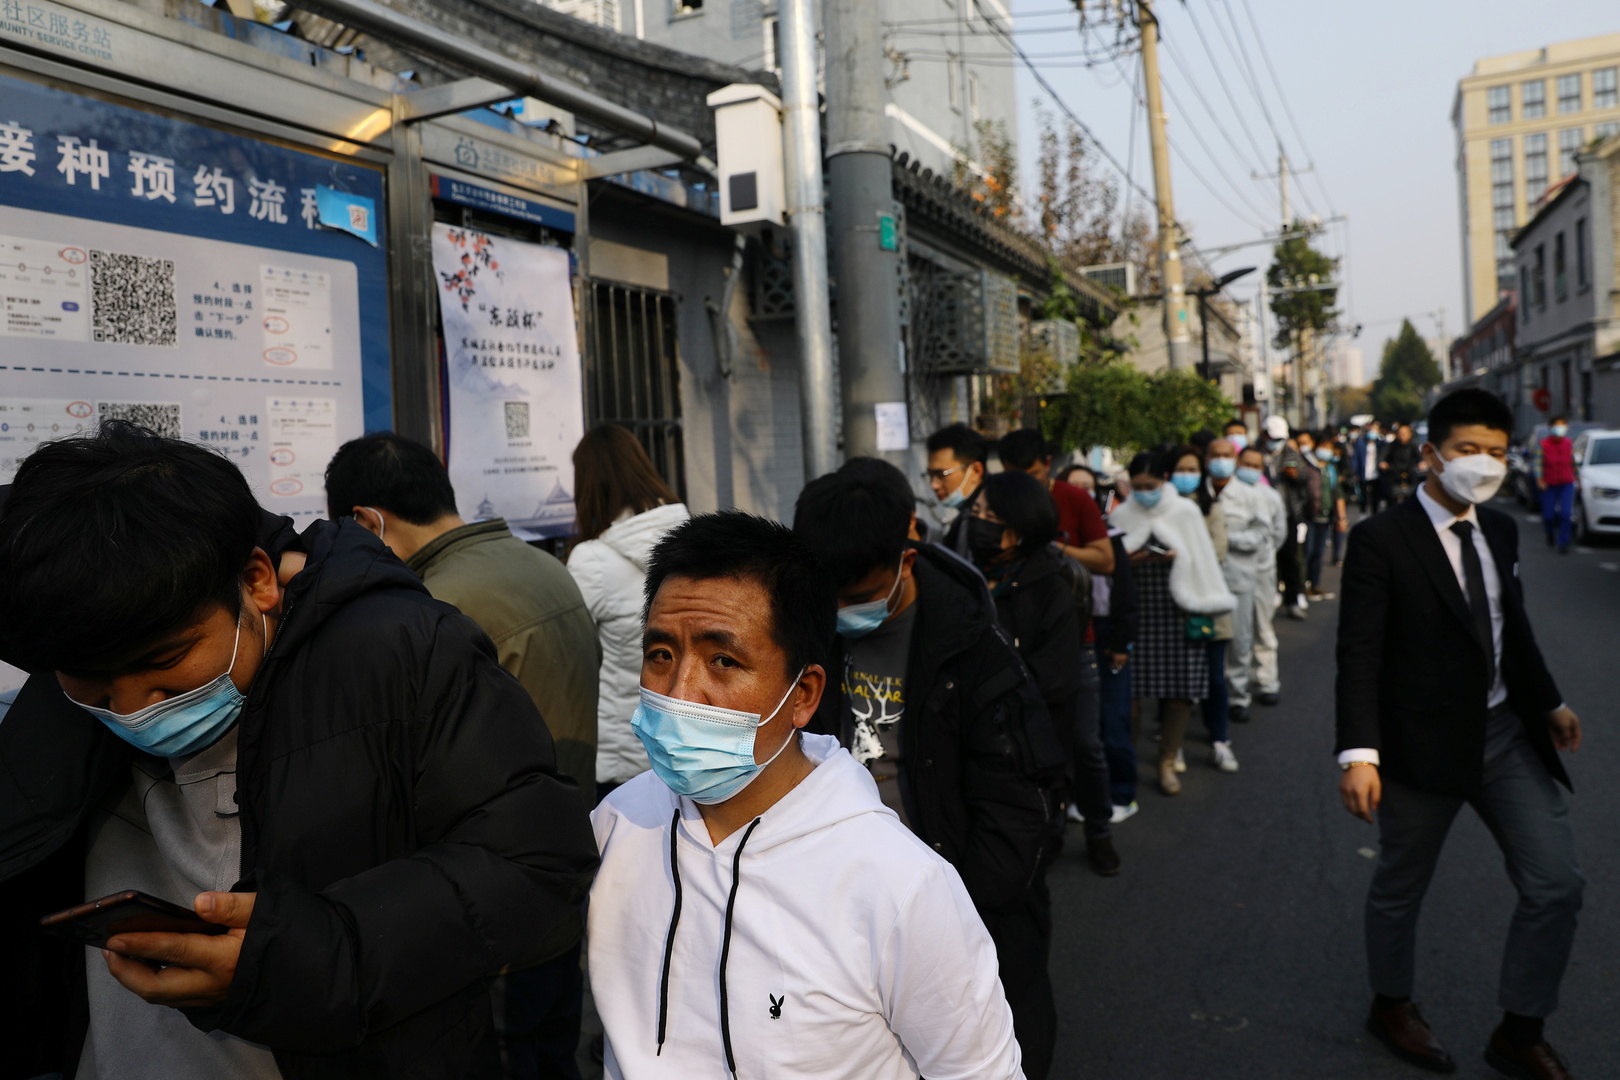 الصين تسجل 71 إصابة جديدة بكورونا